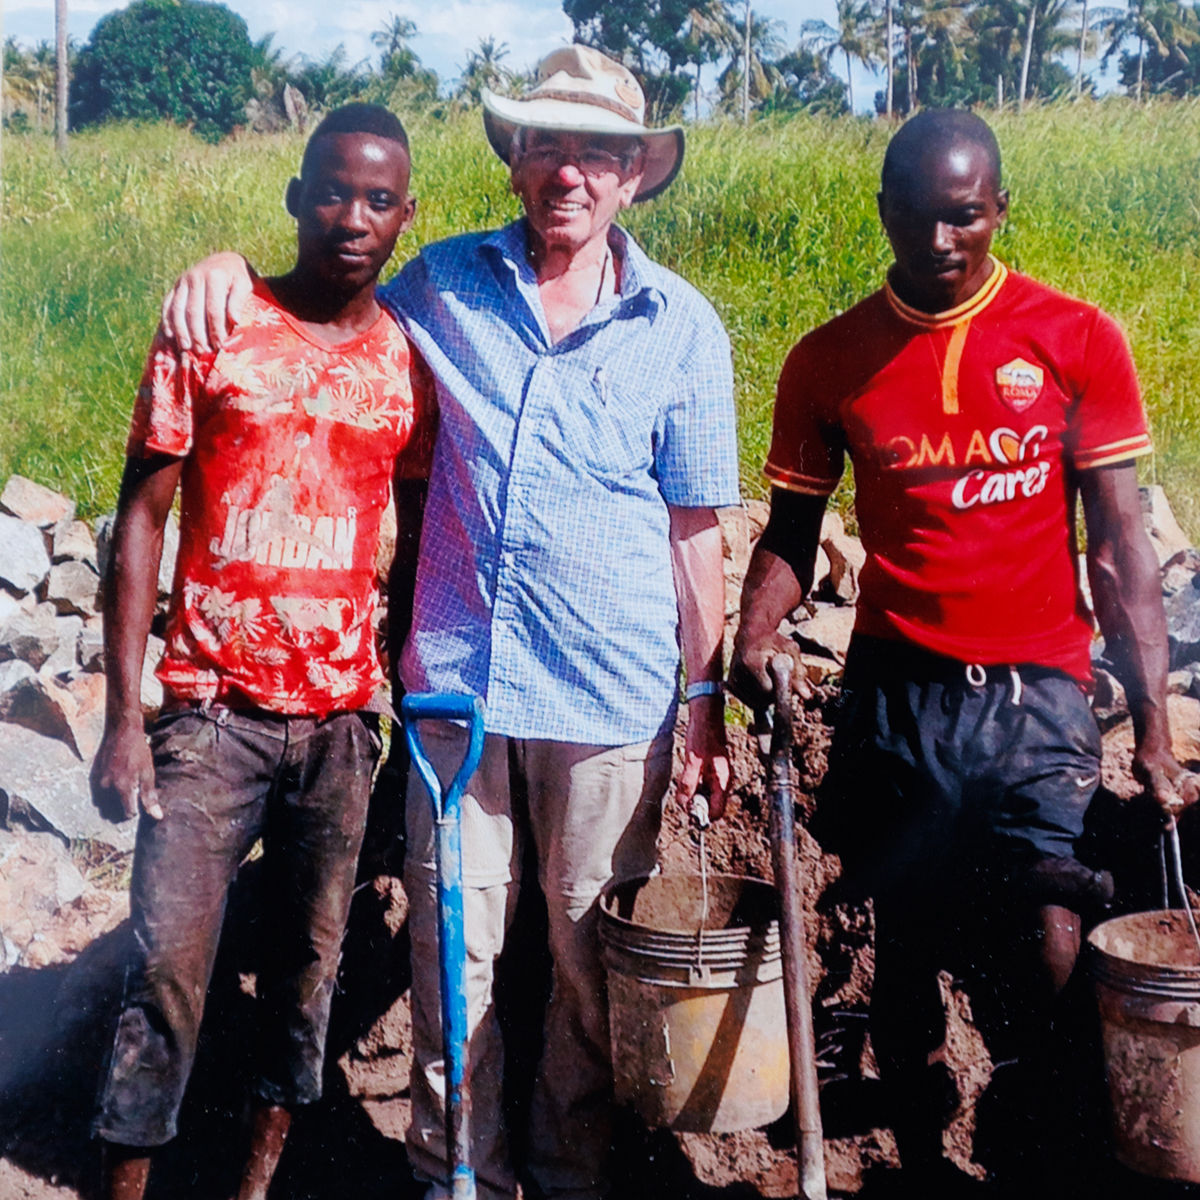 Spenden statt Geschenke zum 80. Geburtstag: Eberhard Ströder sammelt für Grundschule in Tansania